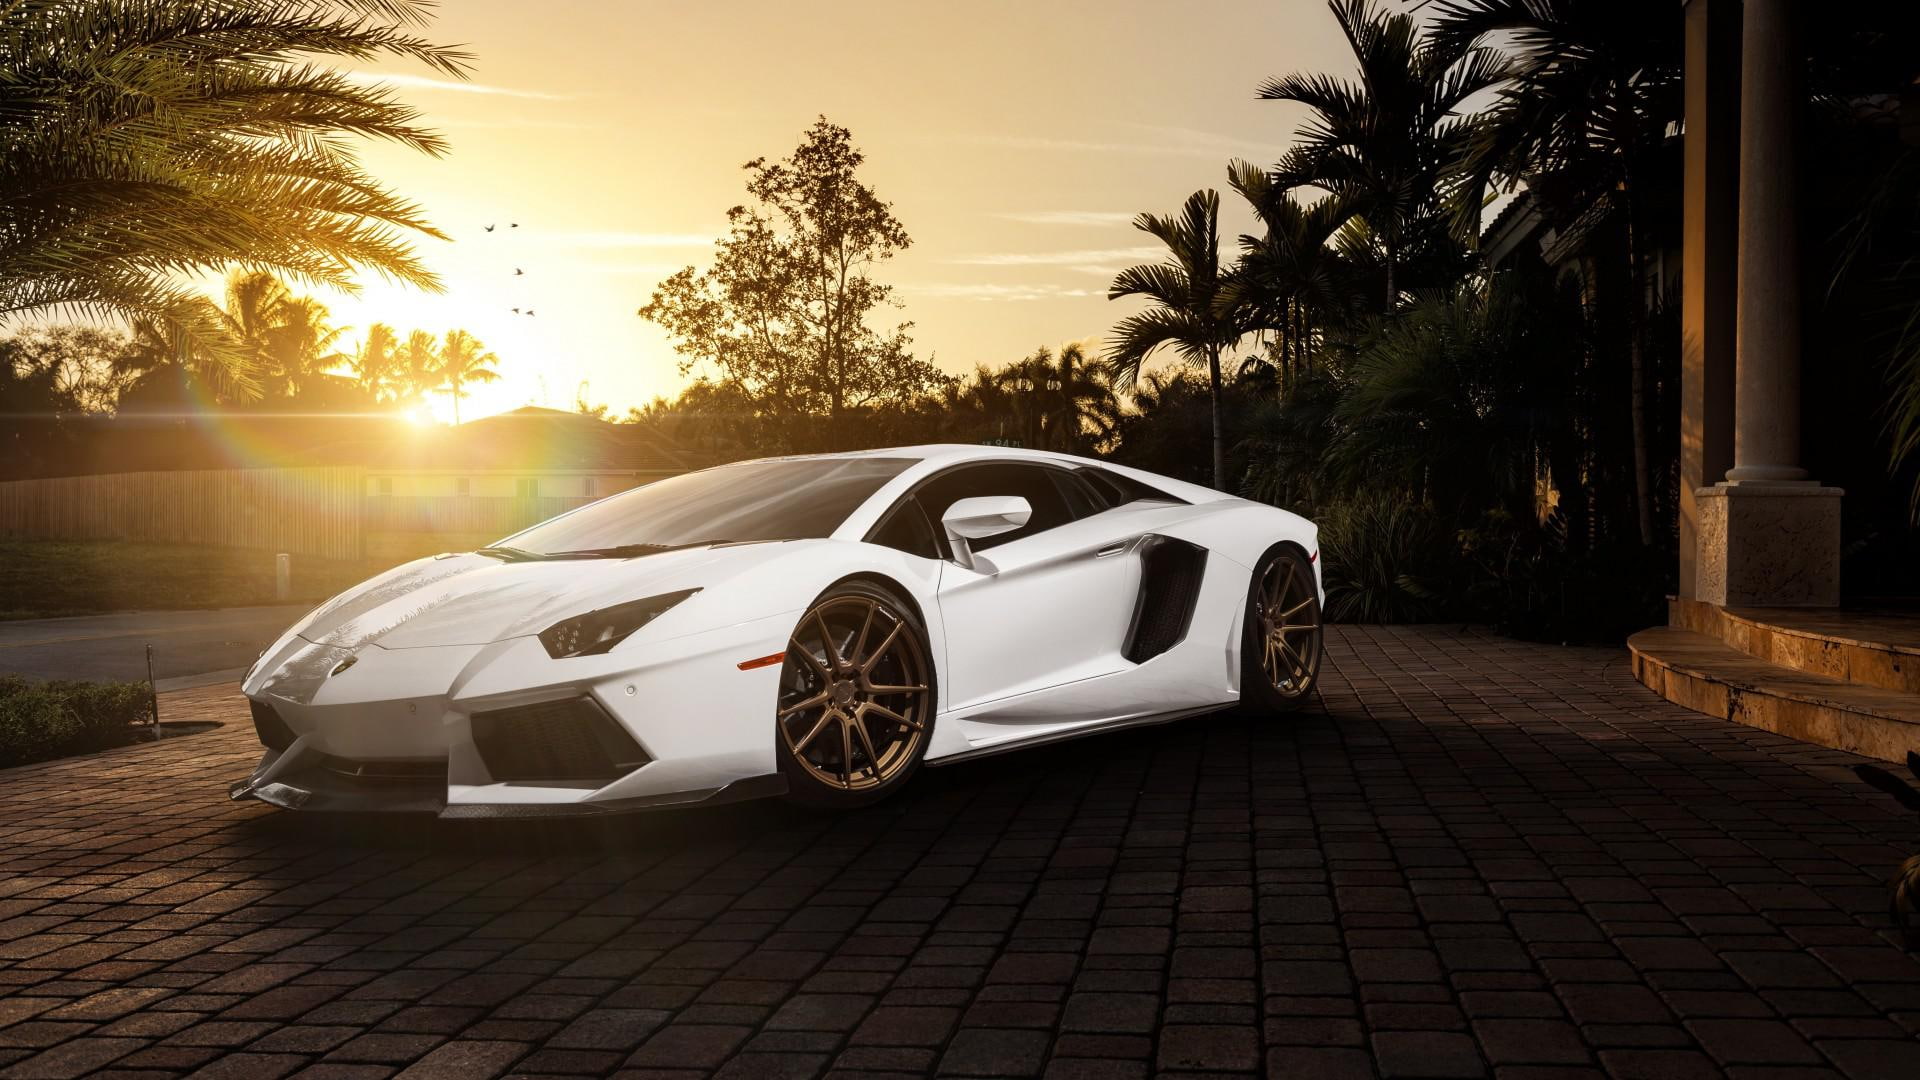 Lamborghini, white sports car, car pictures, ultra HD